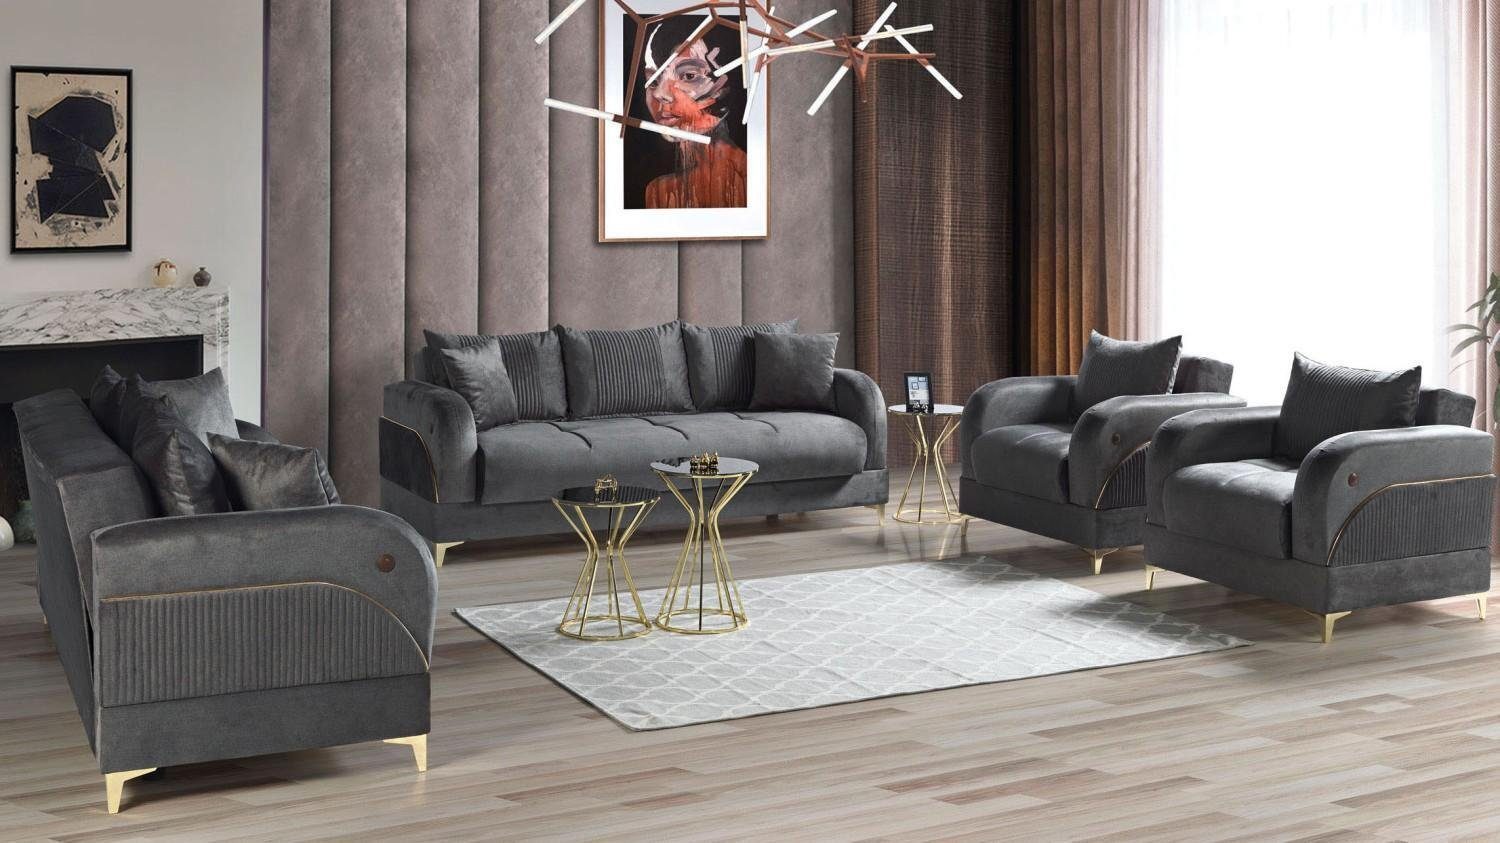 JVmoebel Wohnzimmer-Set Sofagarnitur 3+2+1+1 Sitzer Möbel Luxus Set Sofagarnitur Modern, Made In Europe